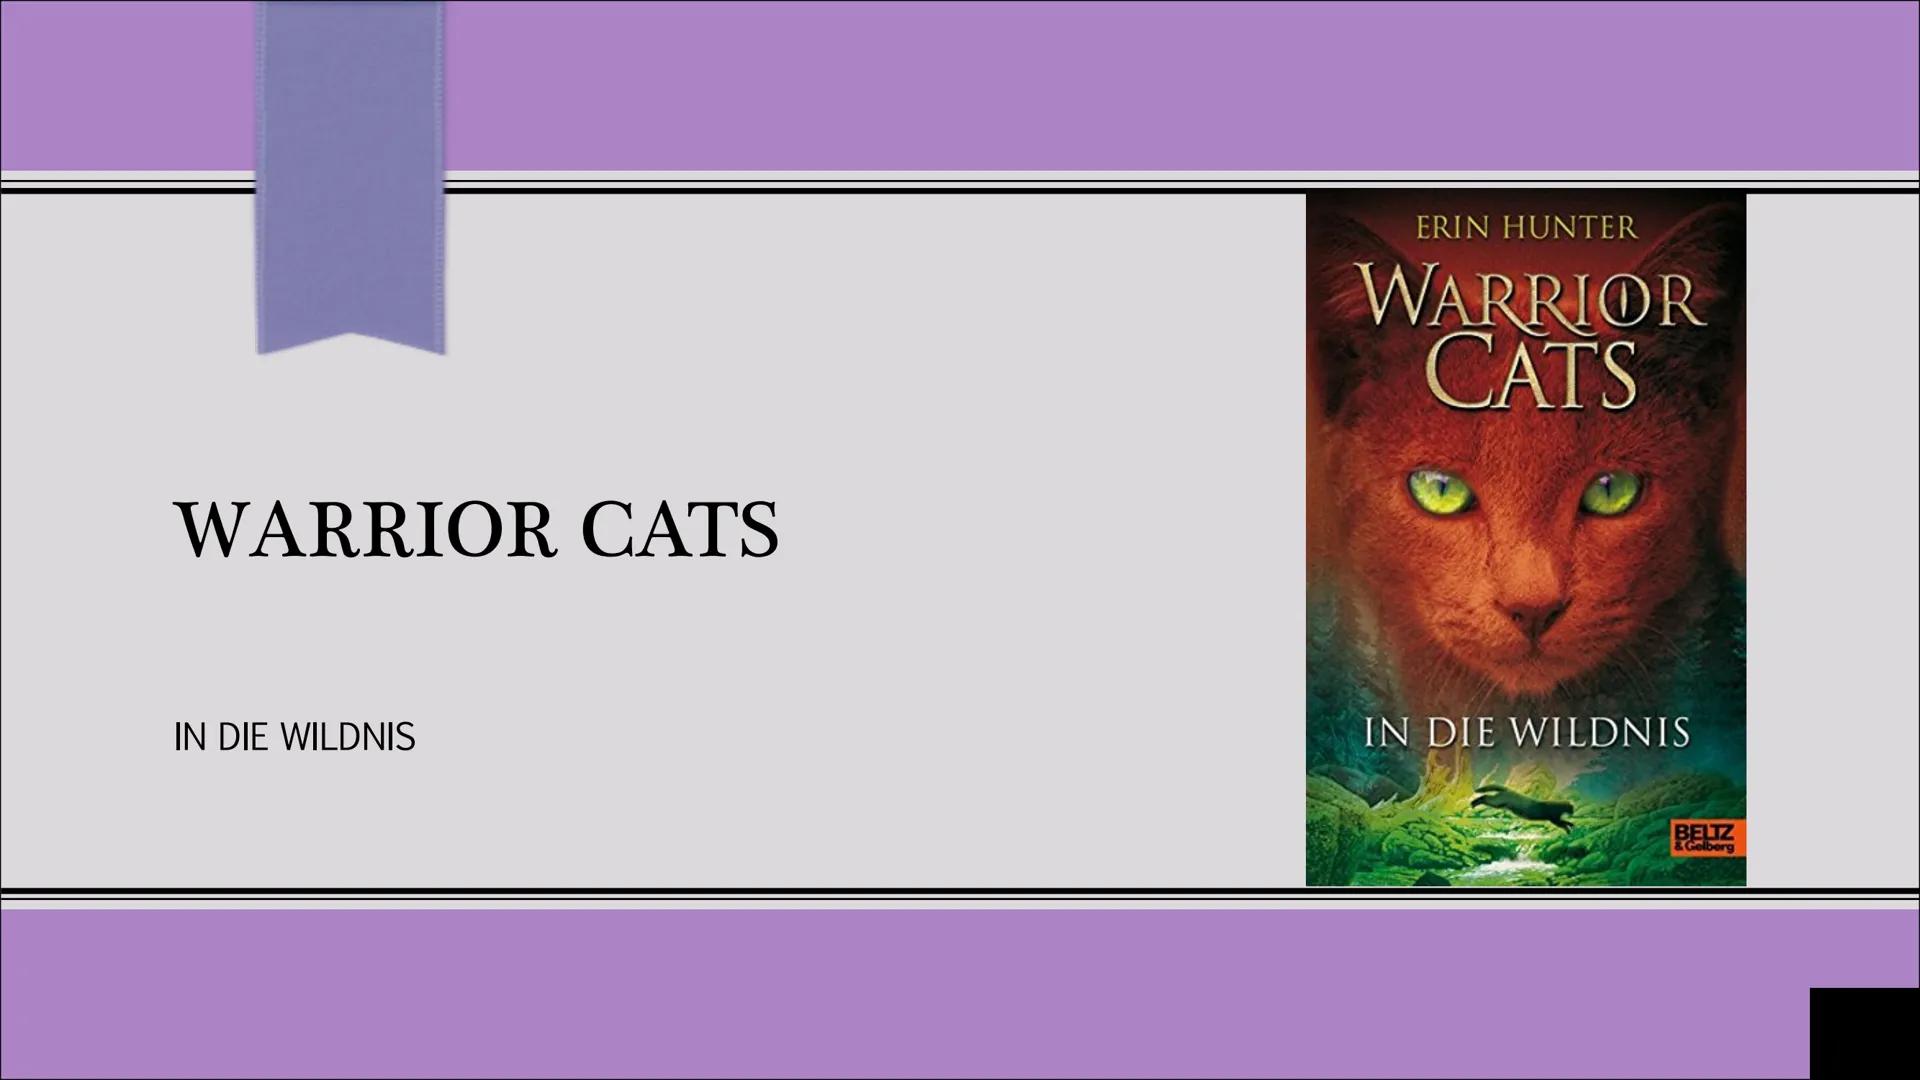 WARRIOR CATS
IN DIE WILDNIS
ERIN HUNTER
WARRIOR
CATS
IN DIE WILDNIS
BELTZ Warum will ich genau diesen Roman vorstellen?
▪ Macht sehr Spaß zu